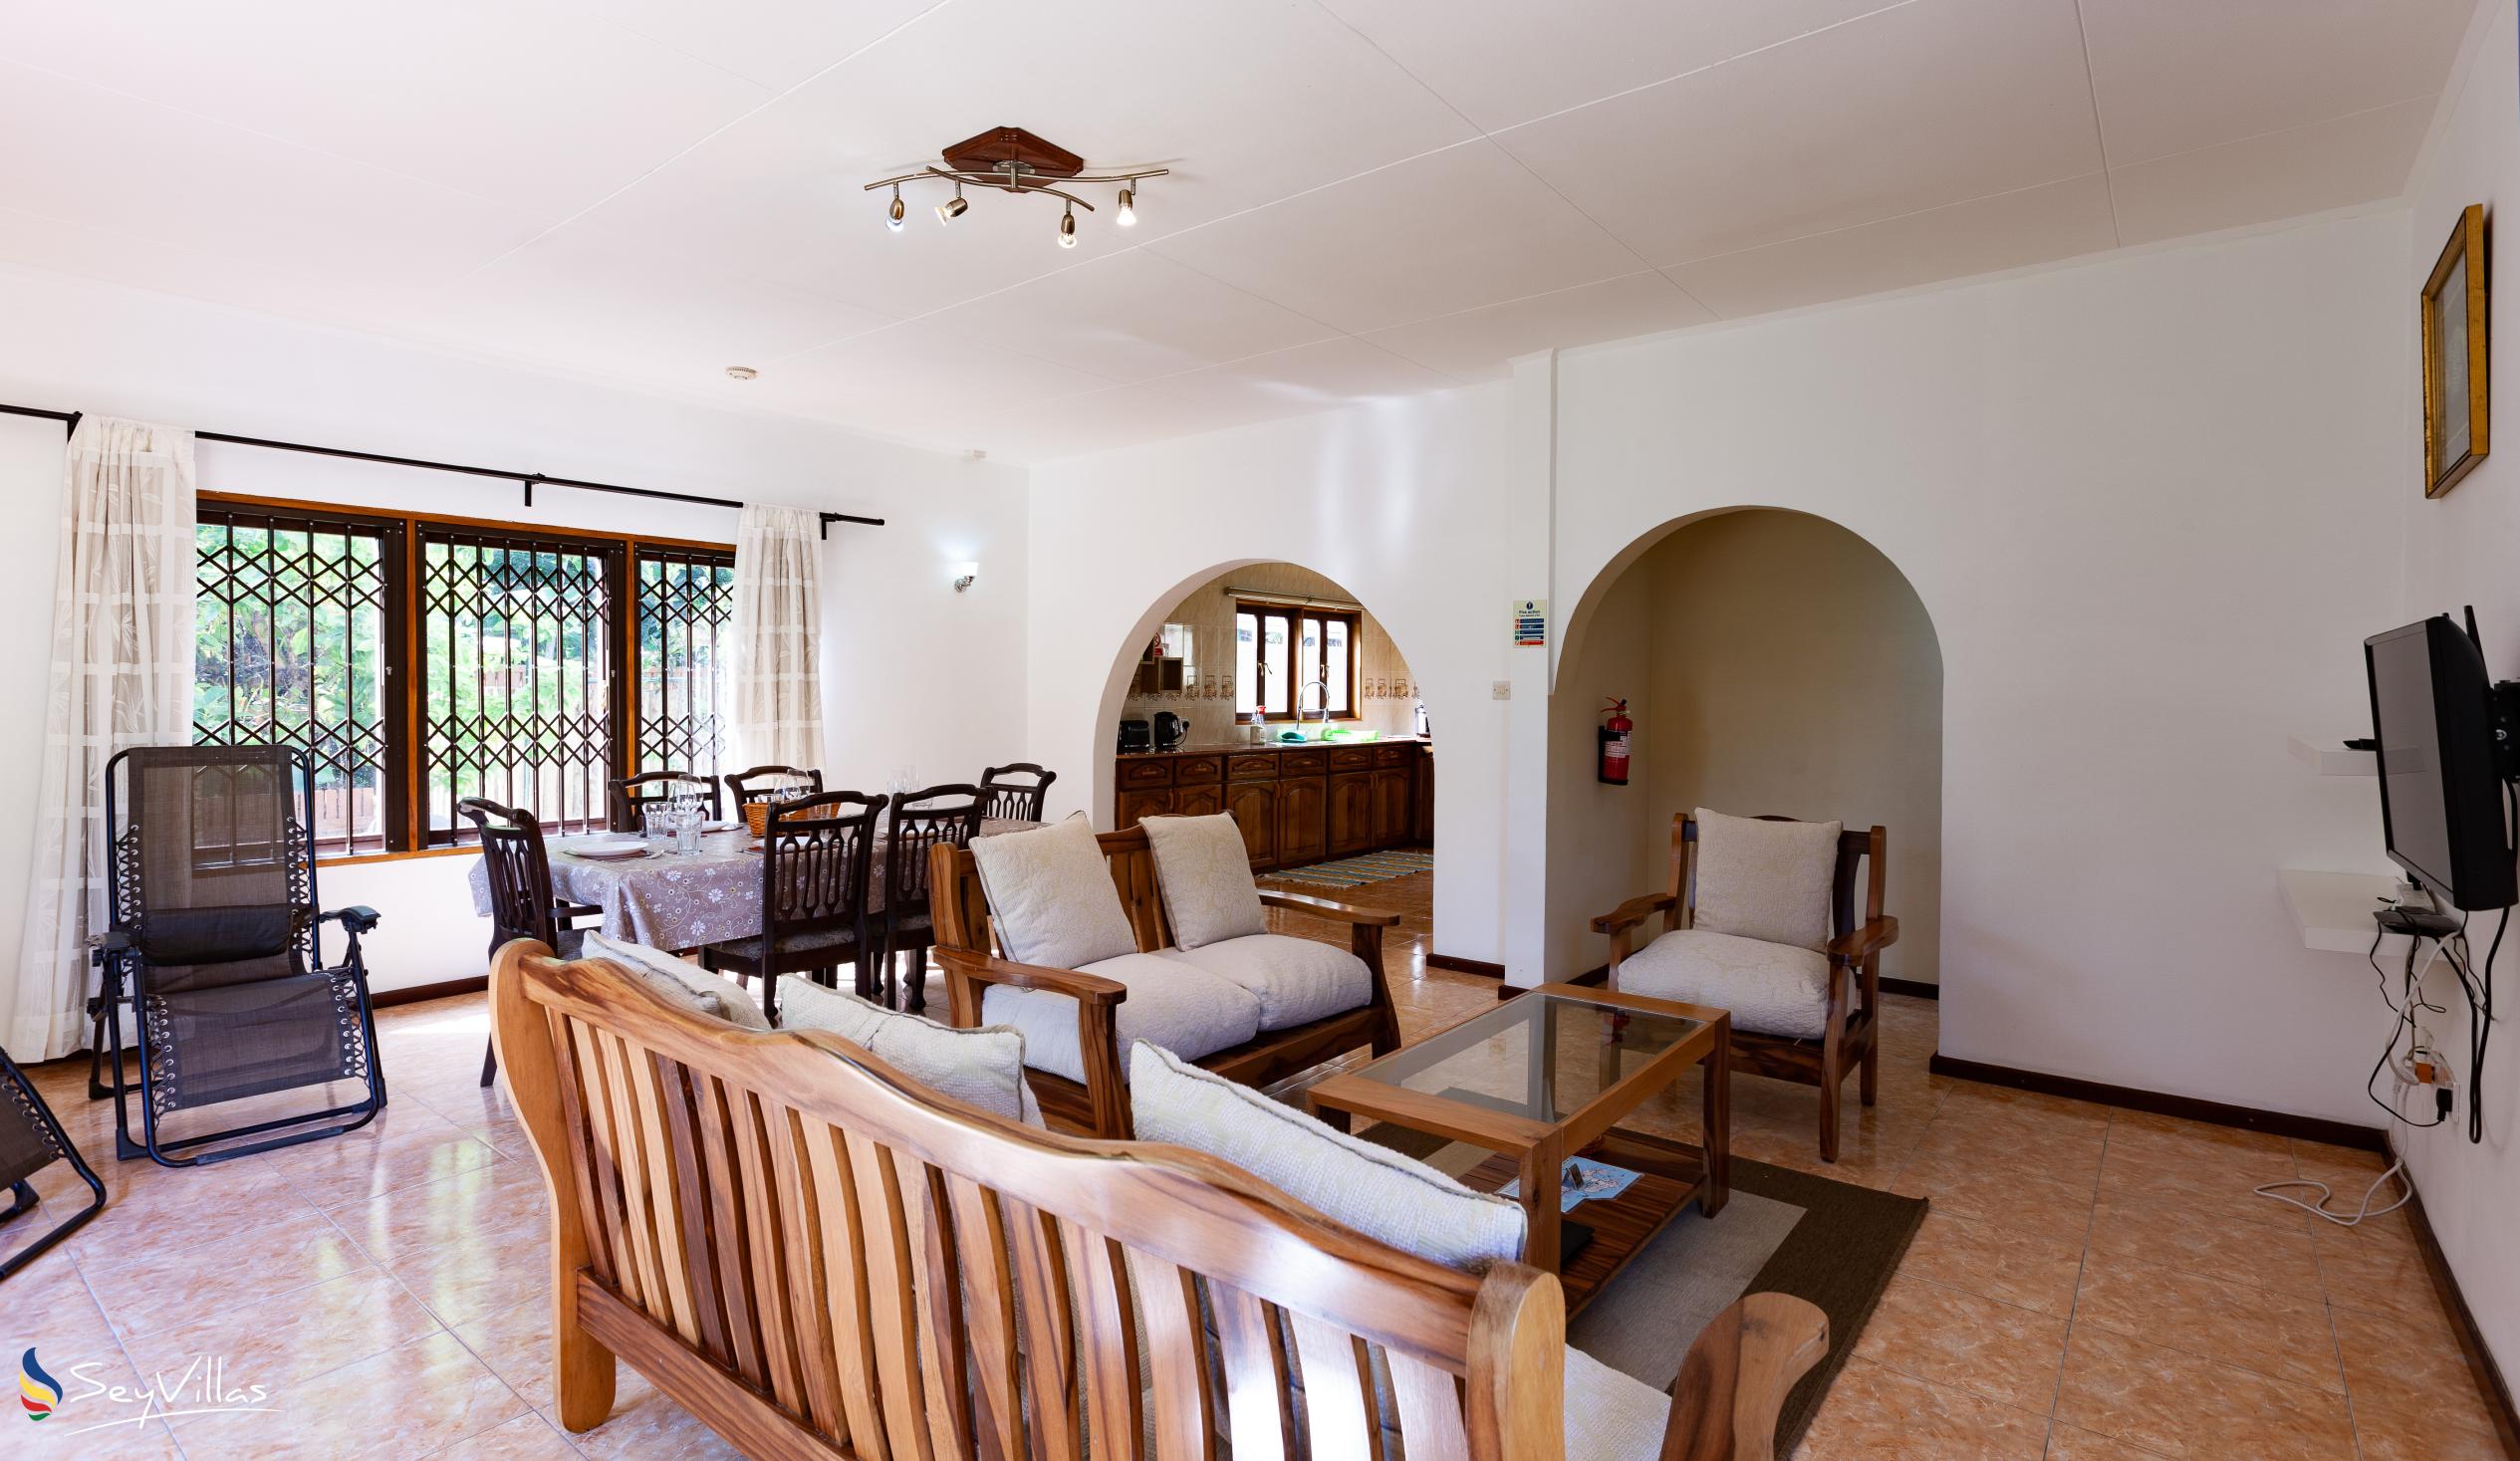 Photo 34: La Casa Grande - Indoor area - Praslin (Seychelles)